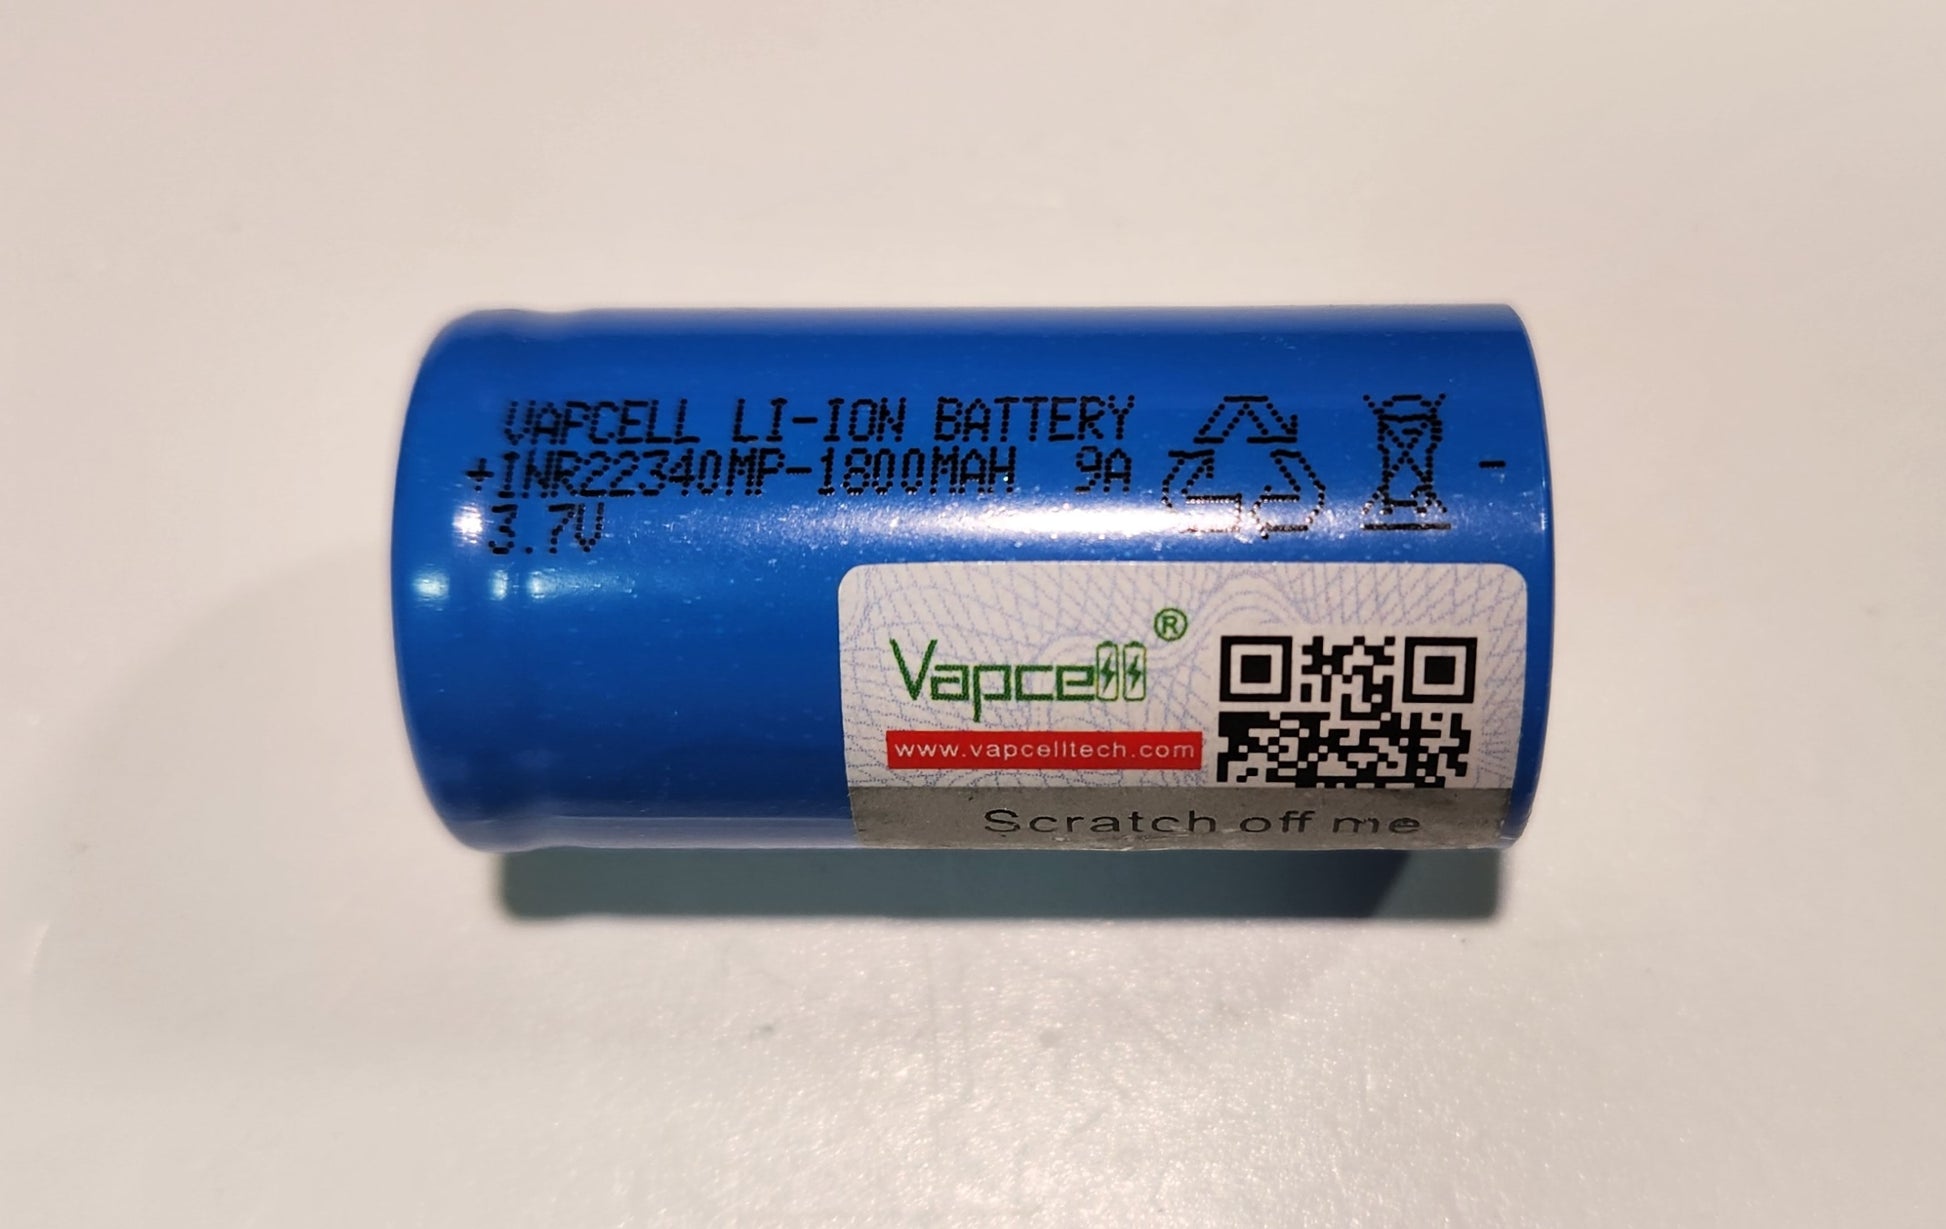 Vapcell/JCM Fireflies 2000mAh 10A Li-Ion Rechargeable Battery VAPCELL 22430 1800MAH 9A